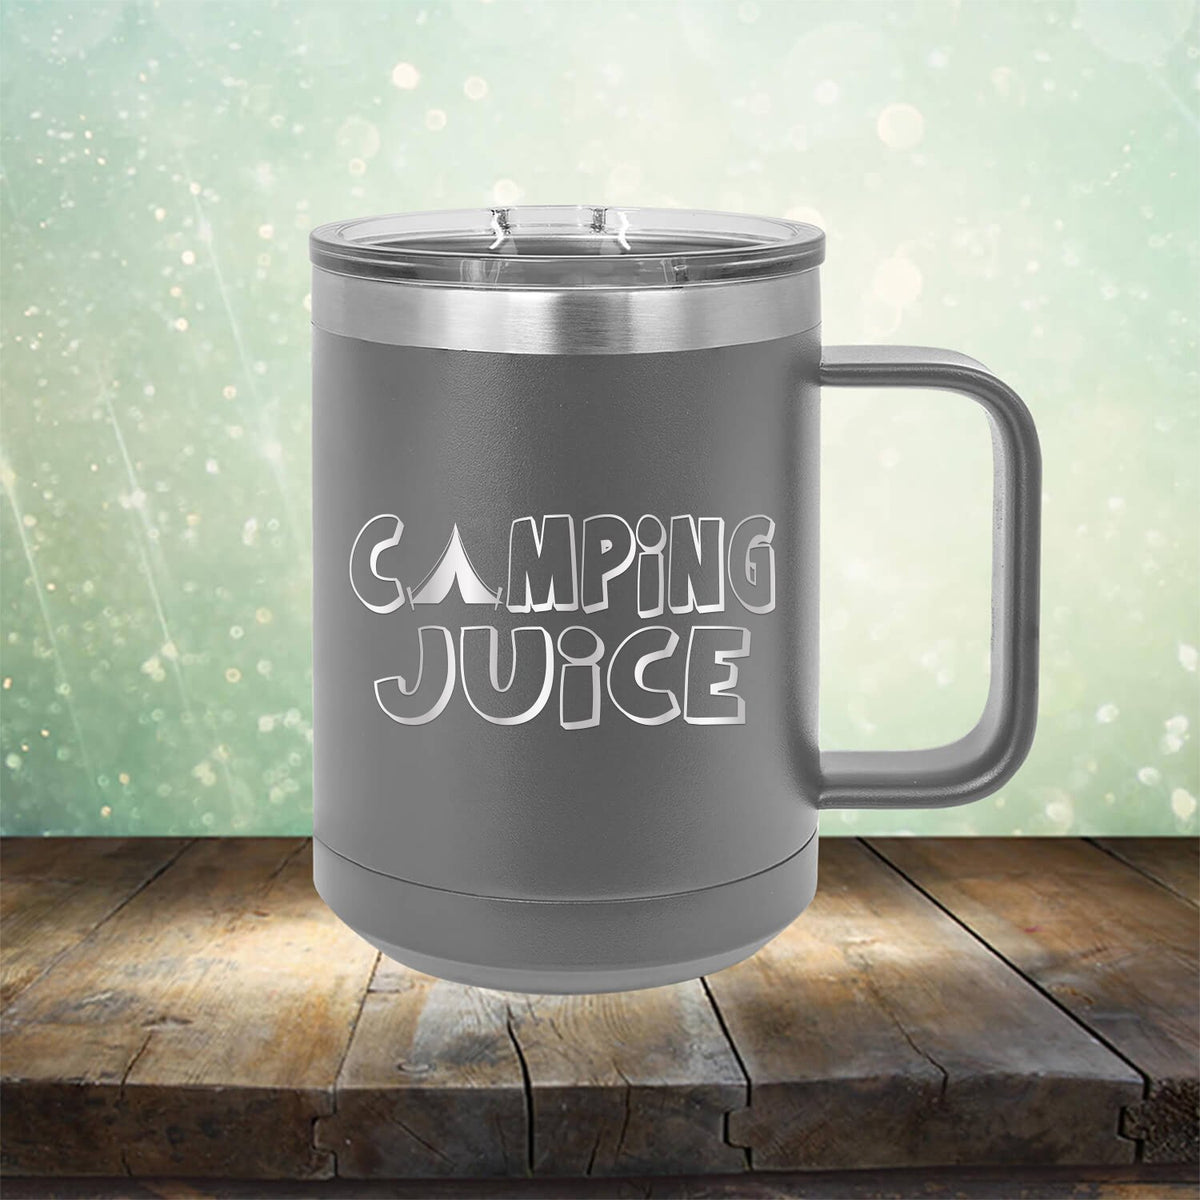 Camping Juice - Laser Etched Tumbler Mug